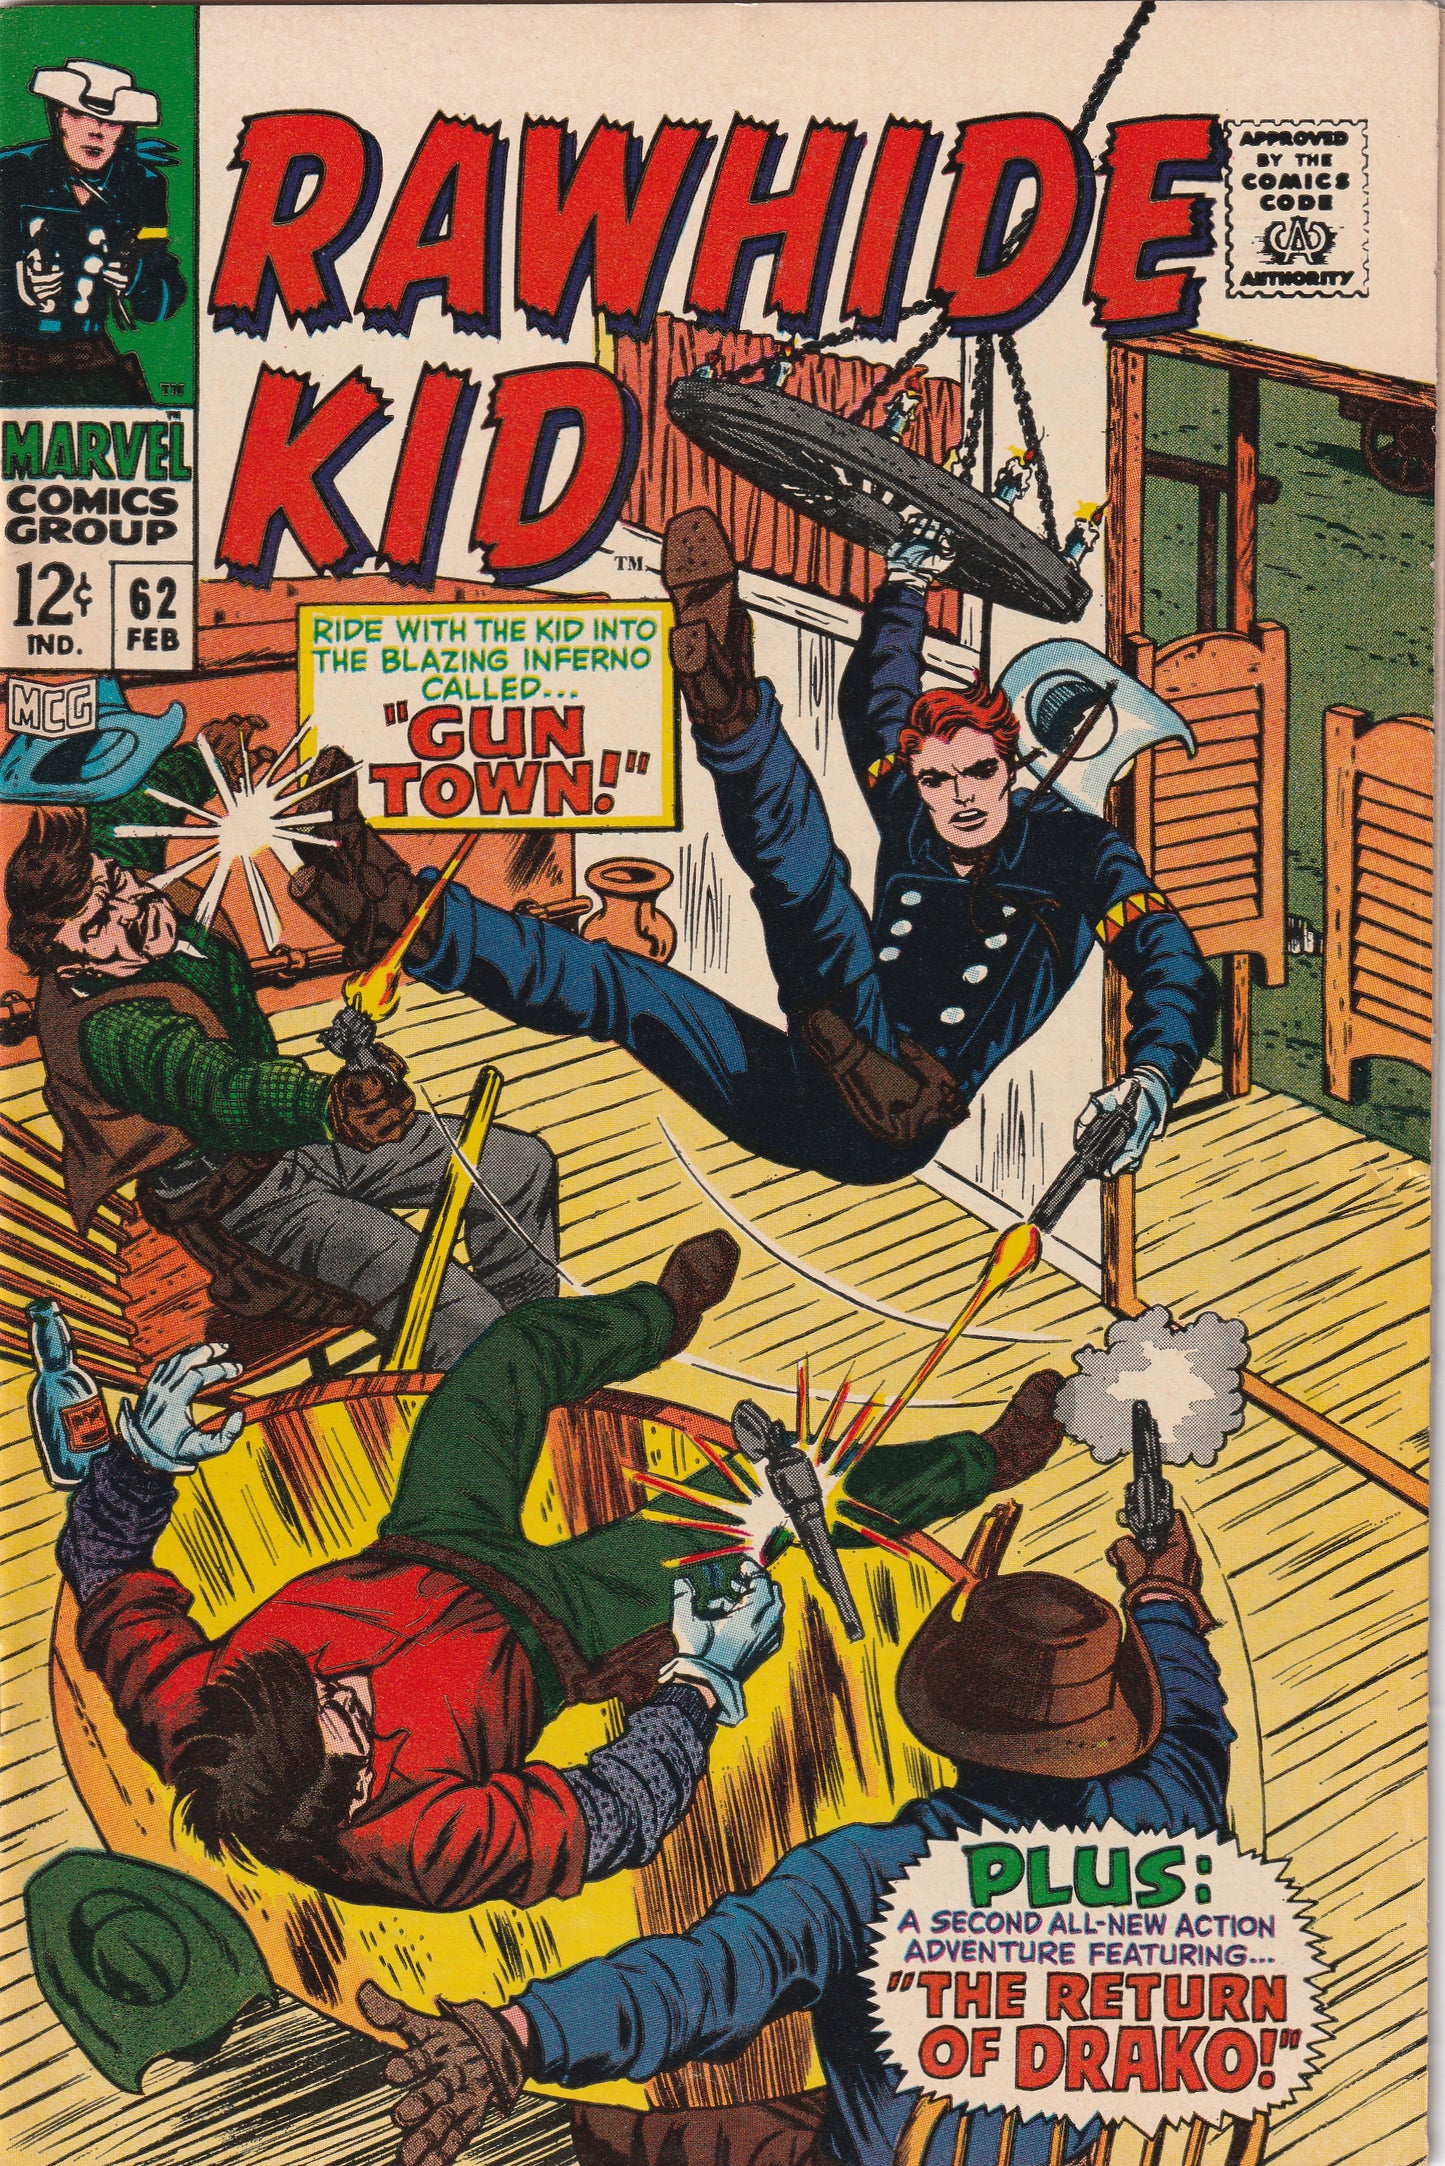 Rawhide Kid #62 (1968)